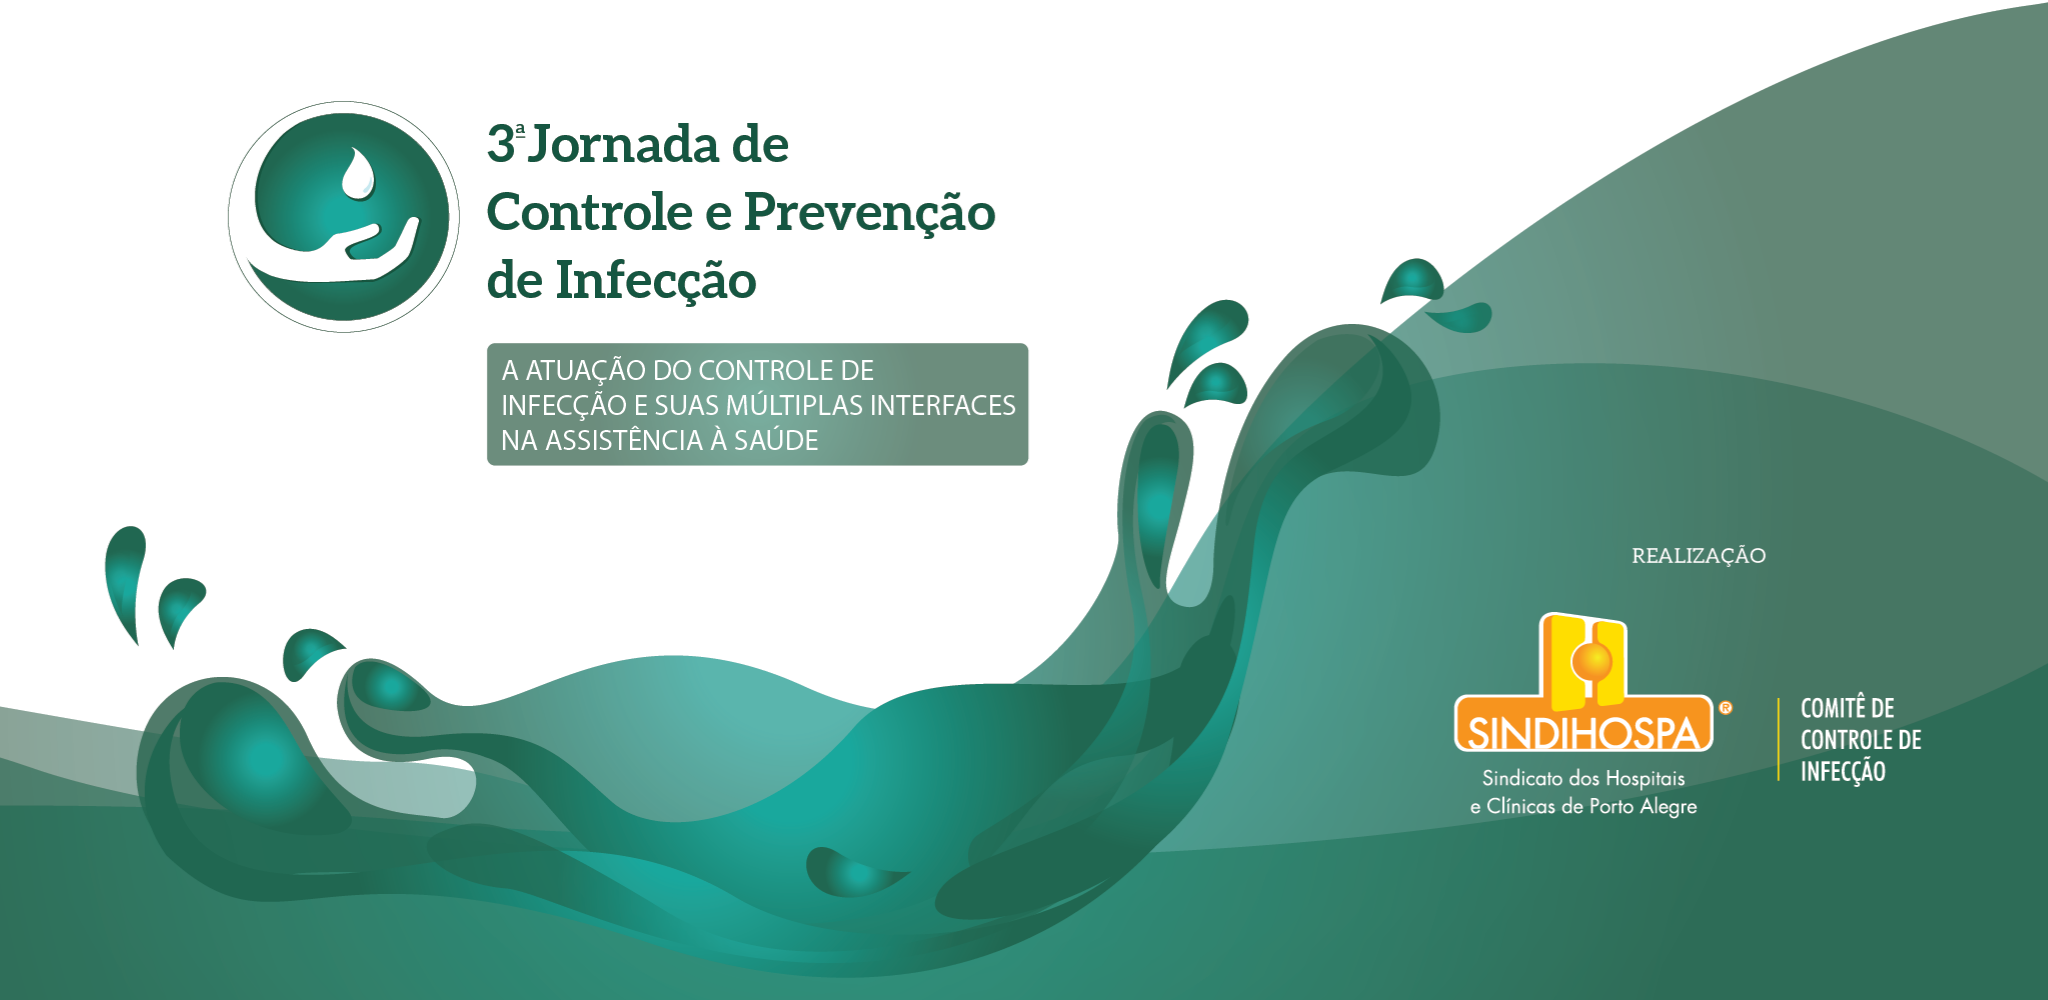 3ª Jornada de Controle e Prevenção de Infecção